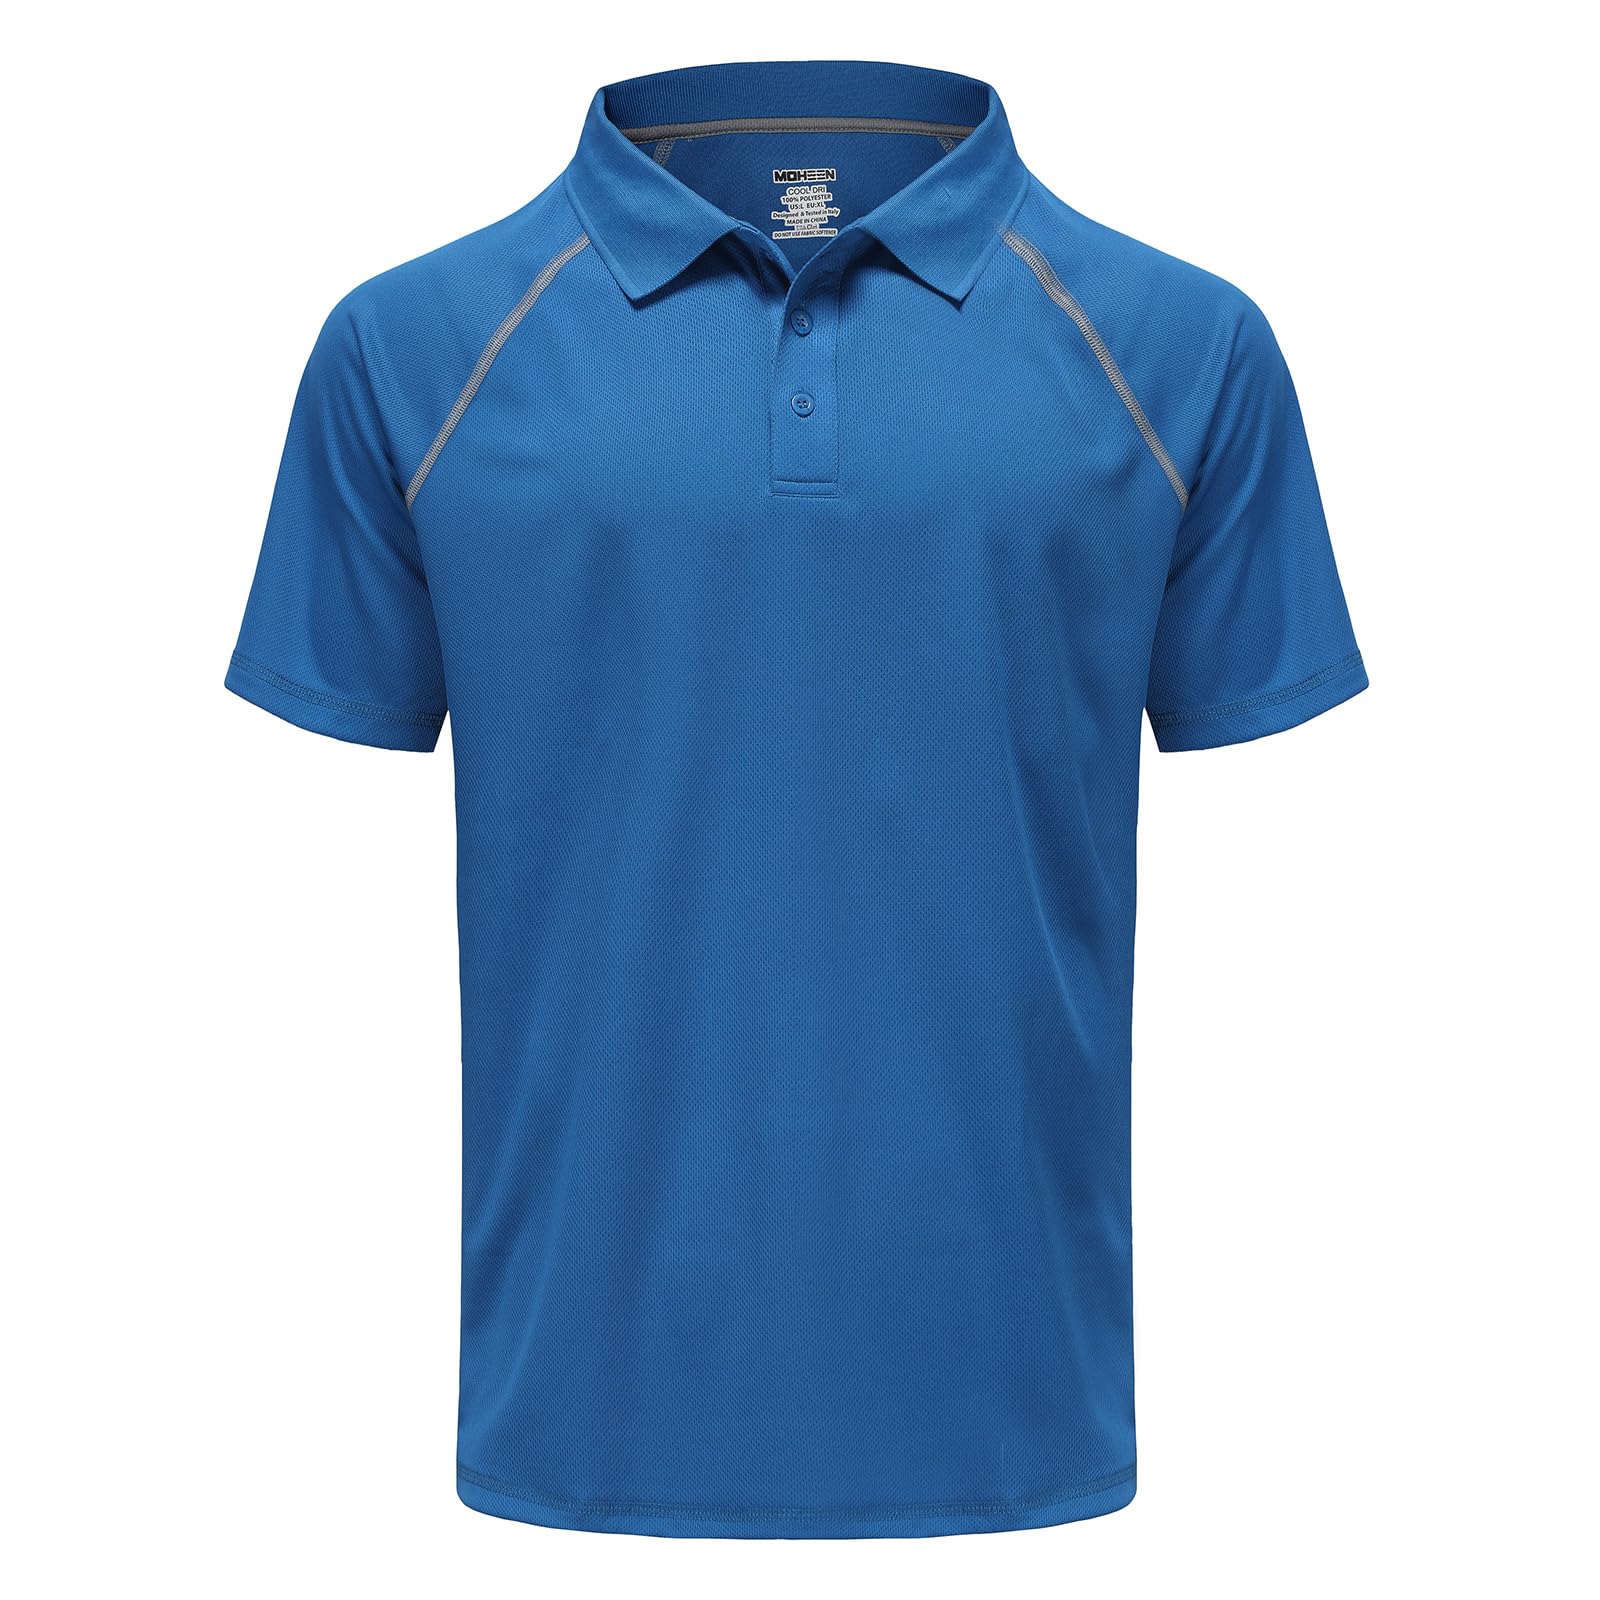 MOHEEN Herren Poloshirt/Funktionsshirt in Übergrößen M bis 4XL - für Sport Freizeit und Arbeit (Blau,5XL)